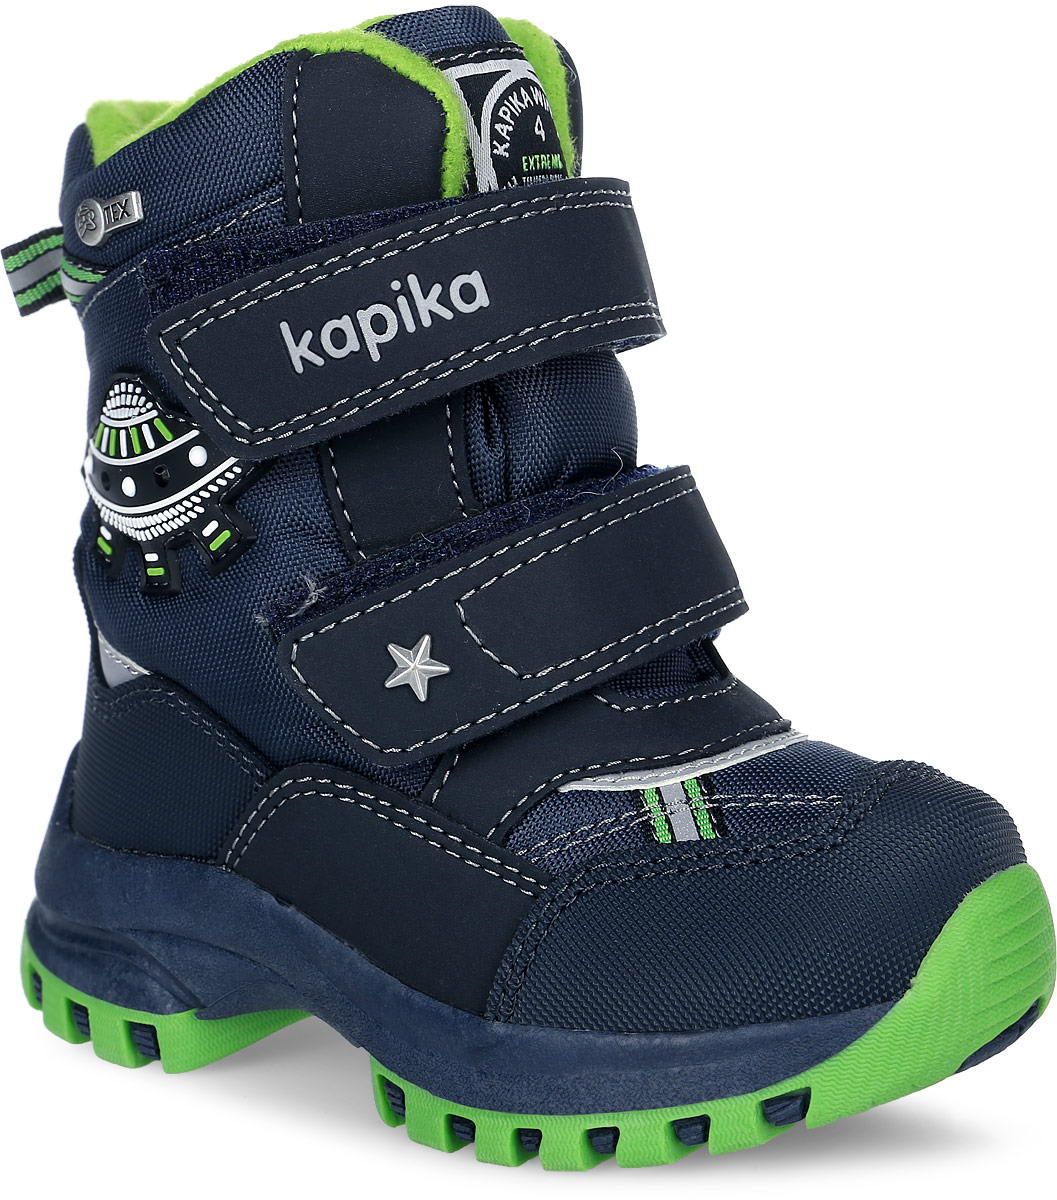 Ботинки для мальчика Kapika, цвет: темно-синий, салатовый. 41147-2. Размер 23